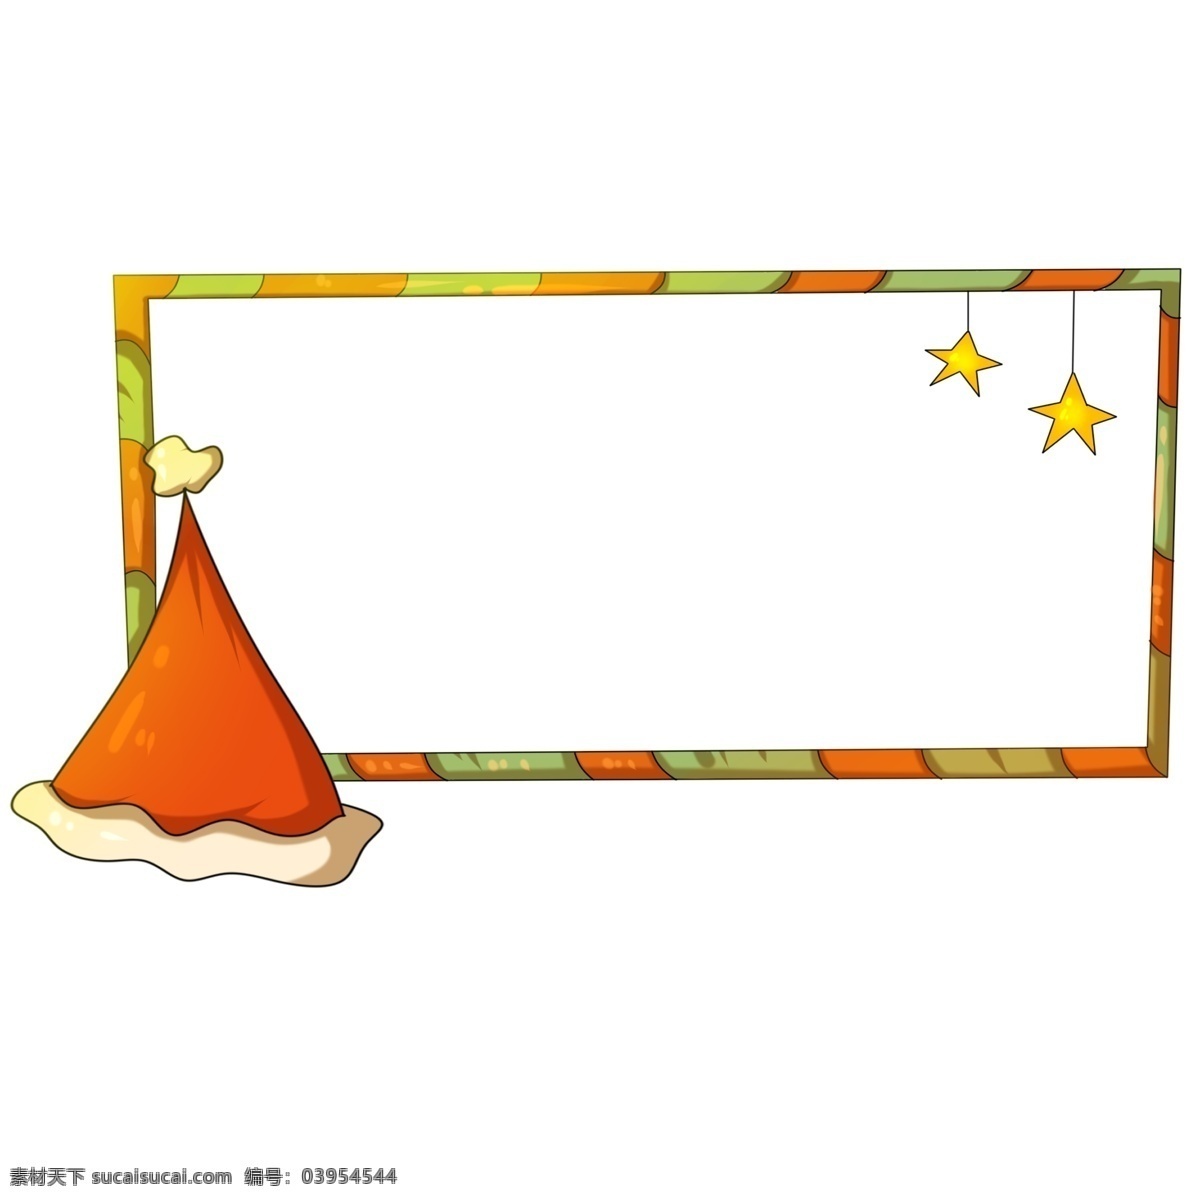 星星 圣诞 帽 条纹 边框 圣诞帽 条纹边框 圣诞节 手绘边框 边框纹理 黄色的五角星 边框插画